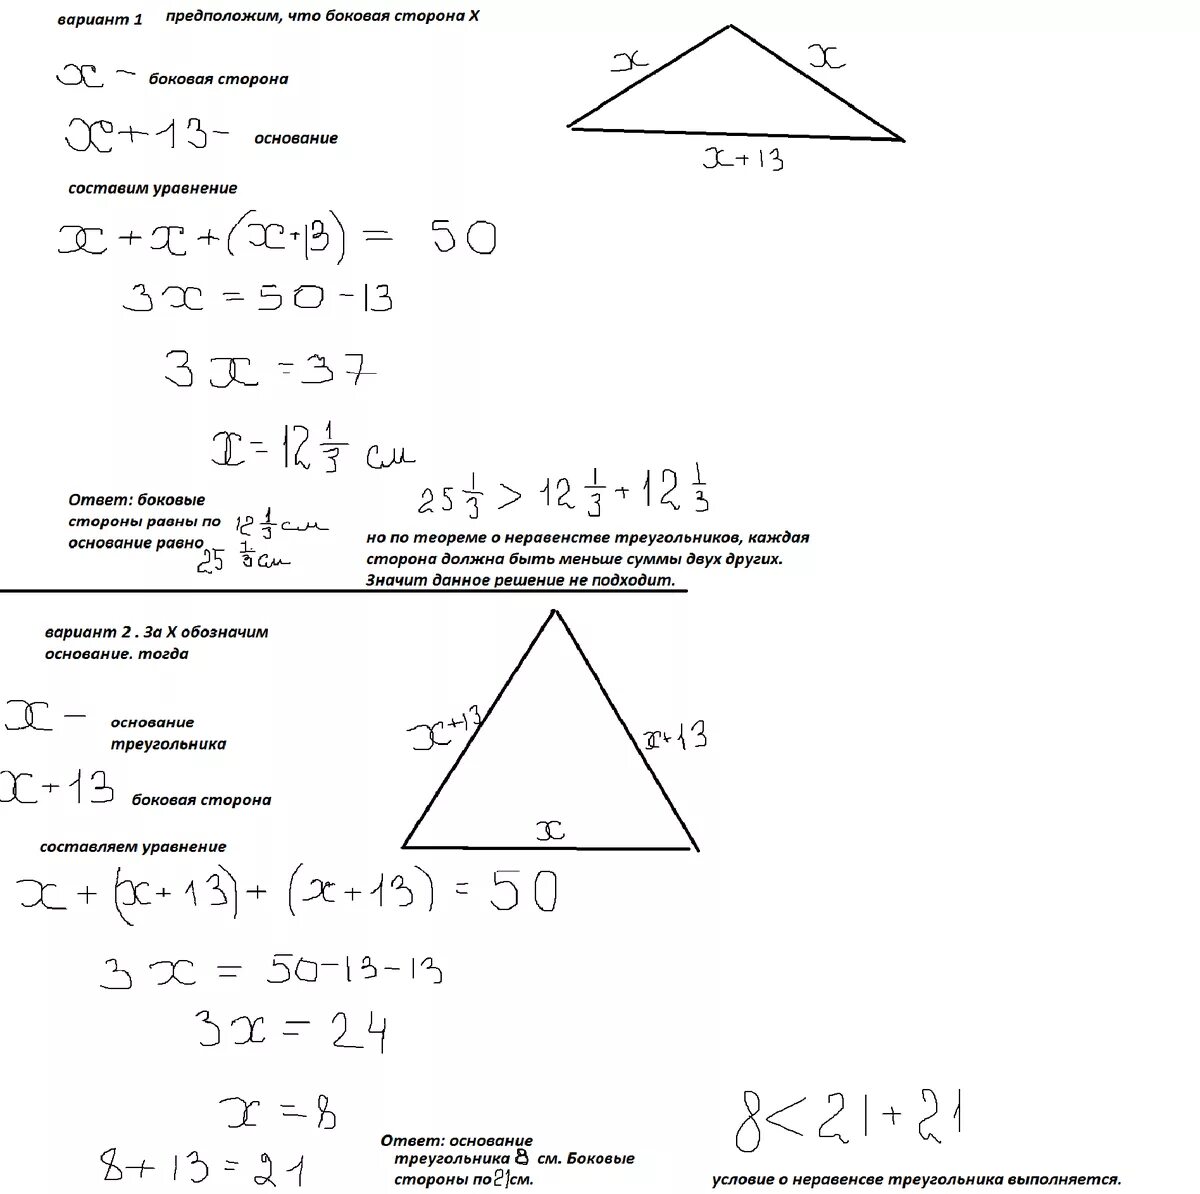 Периметр равнобедренного тупоугольного треугольника равен 108 м. Периметр равнобедренного треугольника. Периметр равнобедренного треугольника равен. Периметр равнобедренного треугольника равен 50. Периметр равнобедренного тупоугольного треугольника.